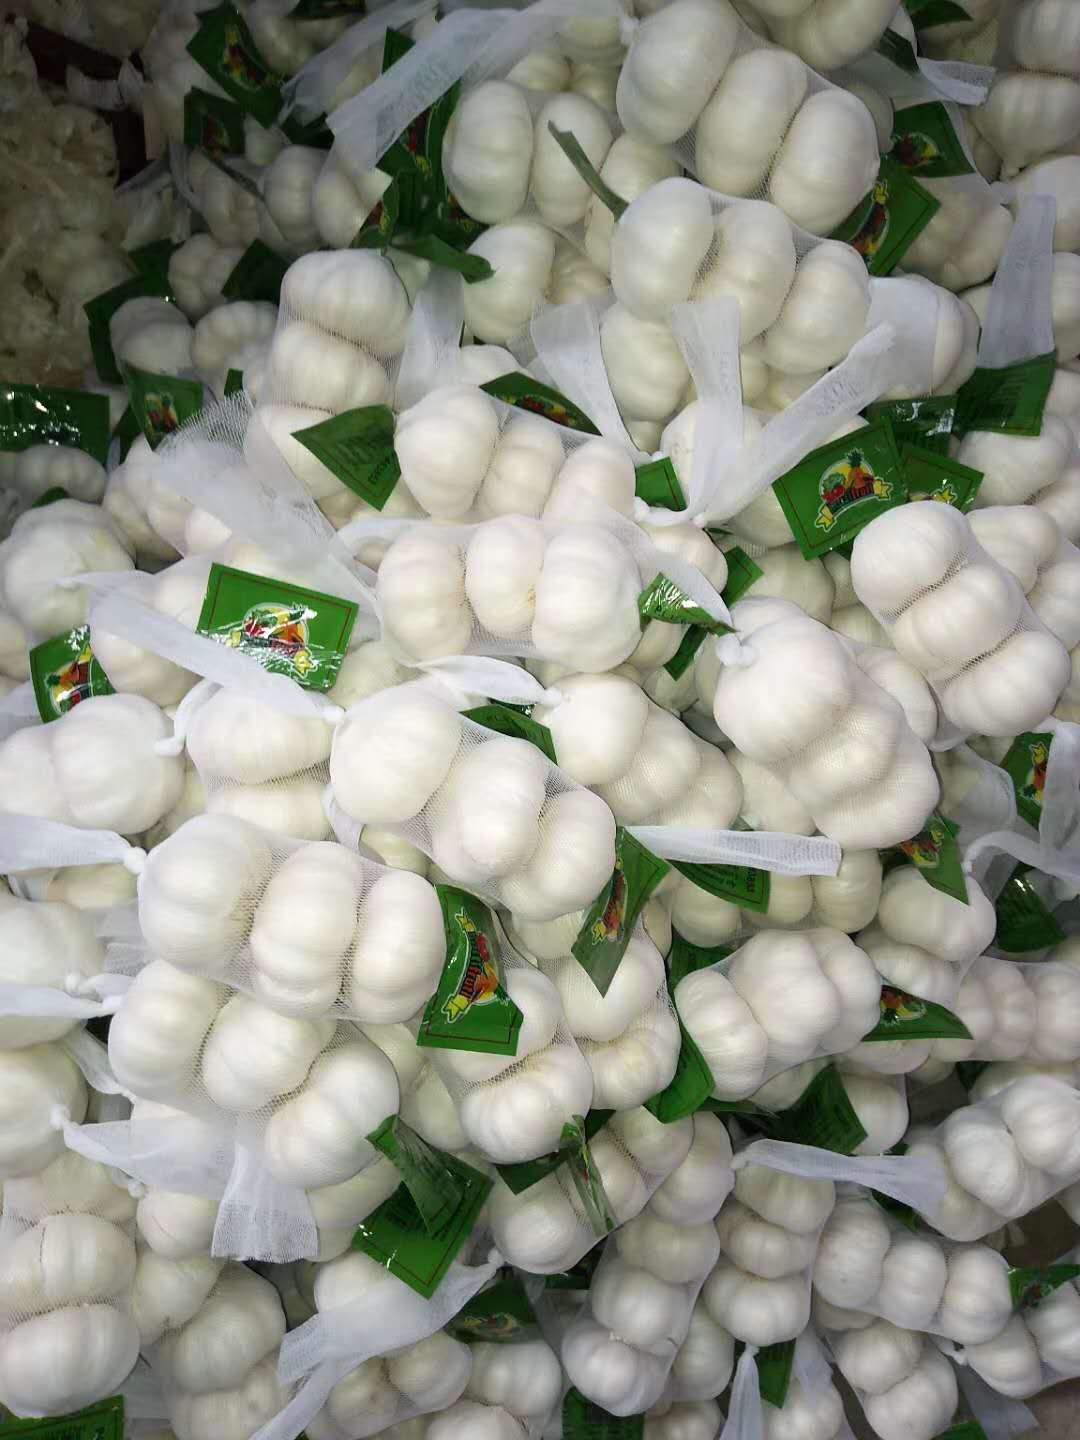 3p Pure White Garlic